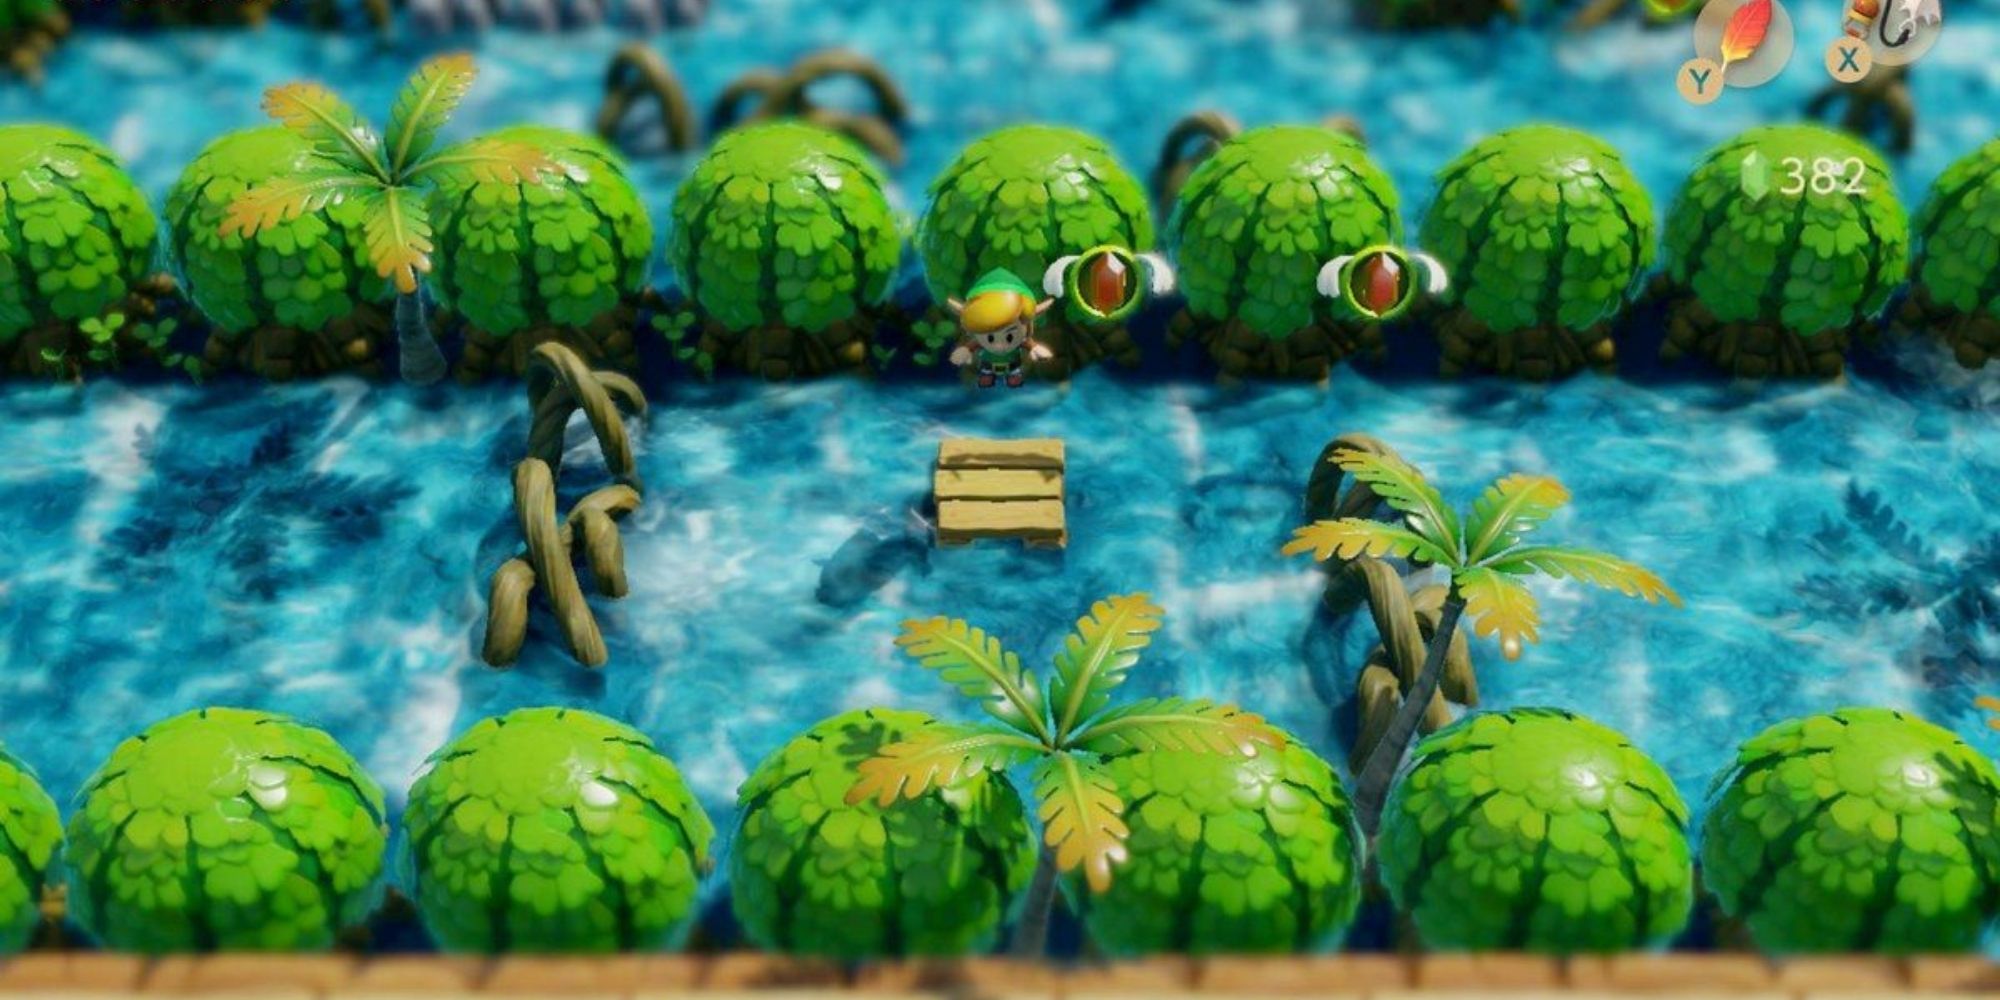 Link hops on a platform in a river